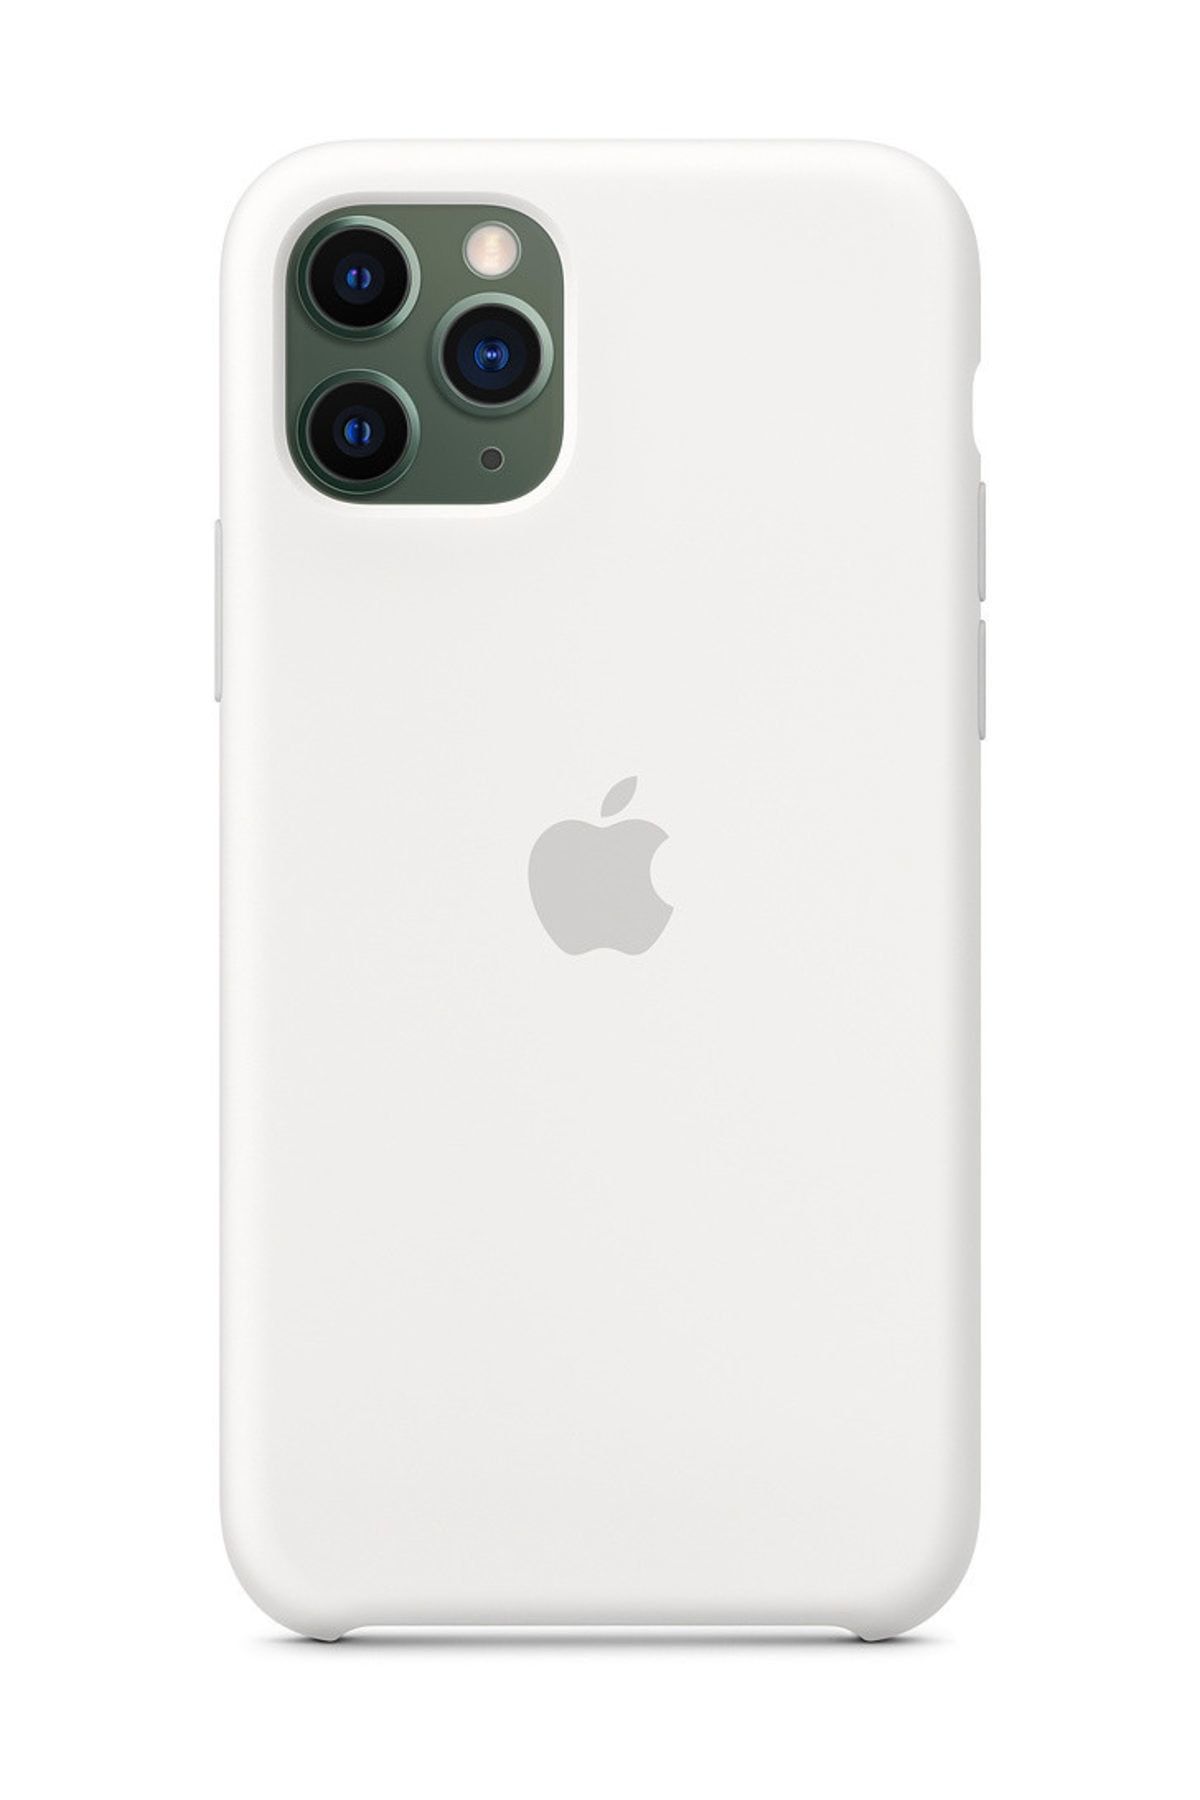 Telefon Aksesuarları iPhone 11 Pro Silikon Kılıf-MWVU2ZM/A - İthalatçı Garantili - Beyaz